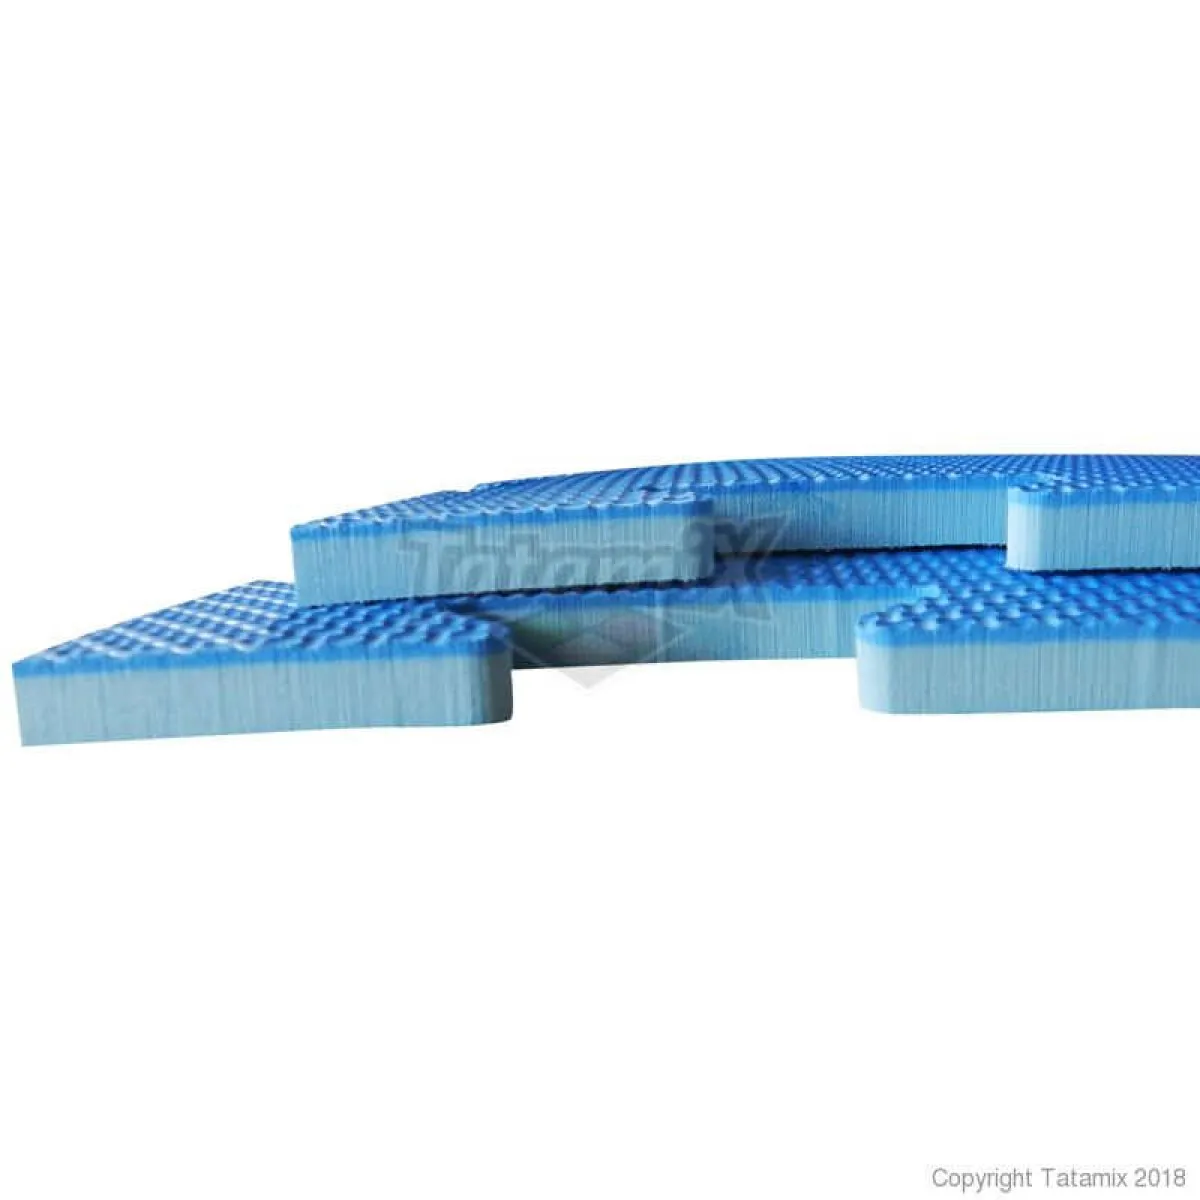 Puzzle mat R10X blue 100 cm x 100 cm x 1 cm